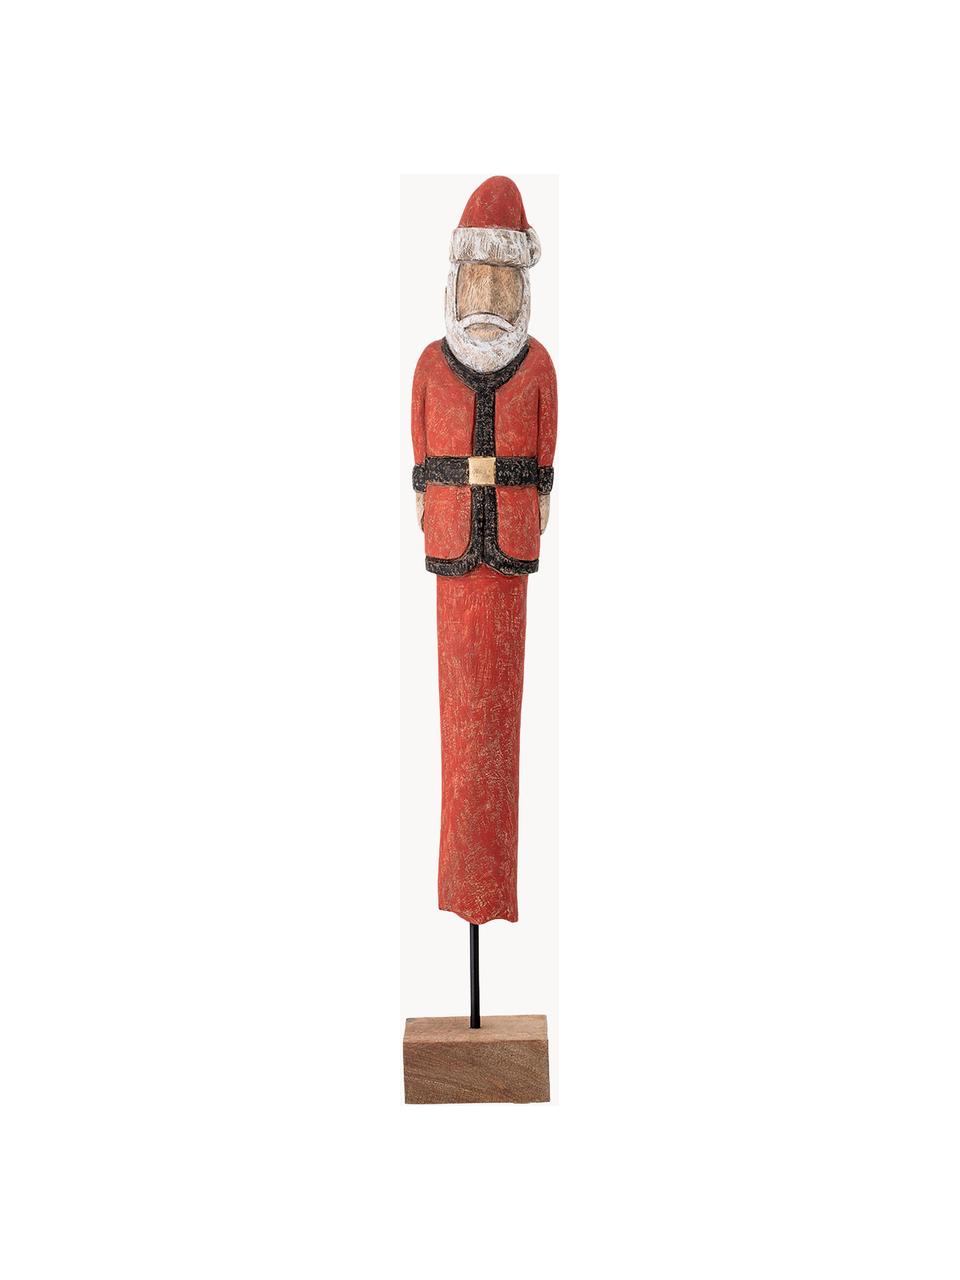 Accessoire décoratif Weihnachtsmann; haut. 56 cm, Bois de manguier, enduit, métal, Rouge, noir, blanc, brun, larg. 10 x haut. 56 cm